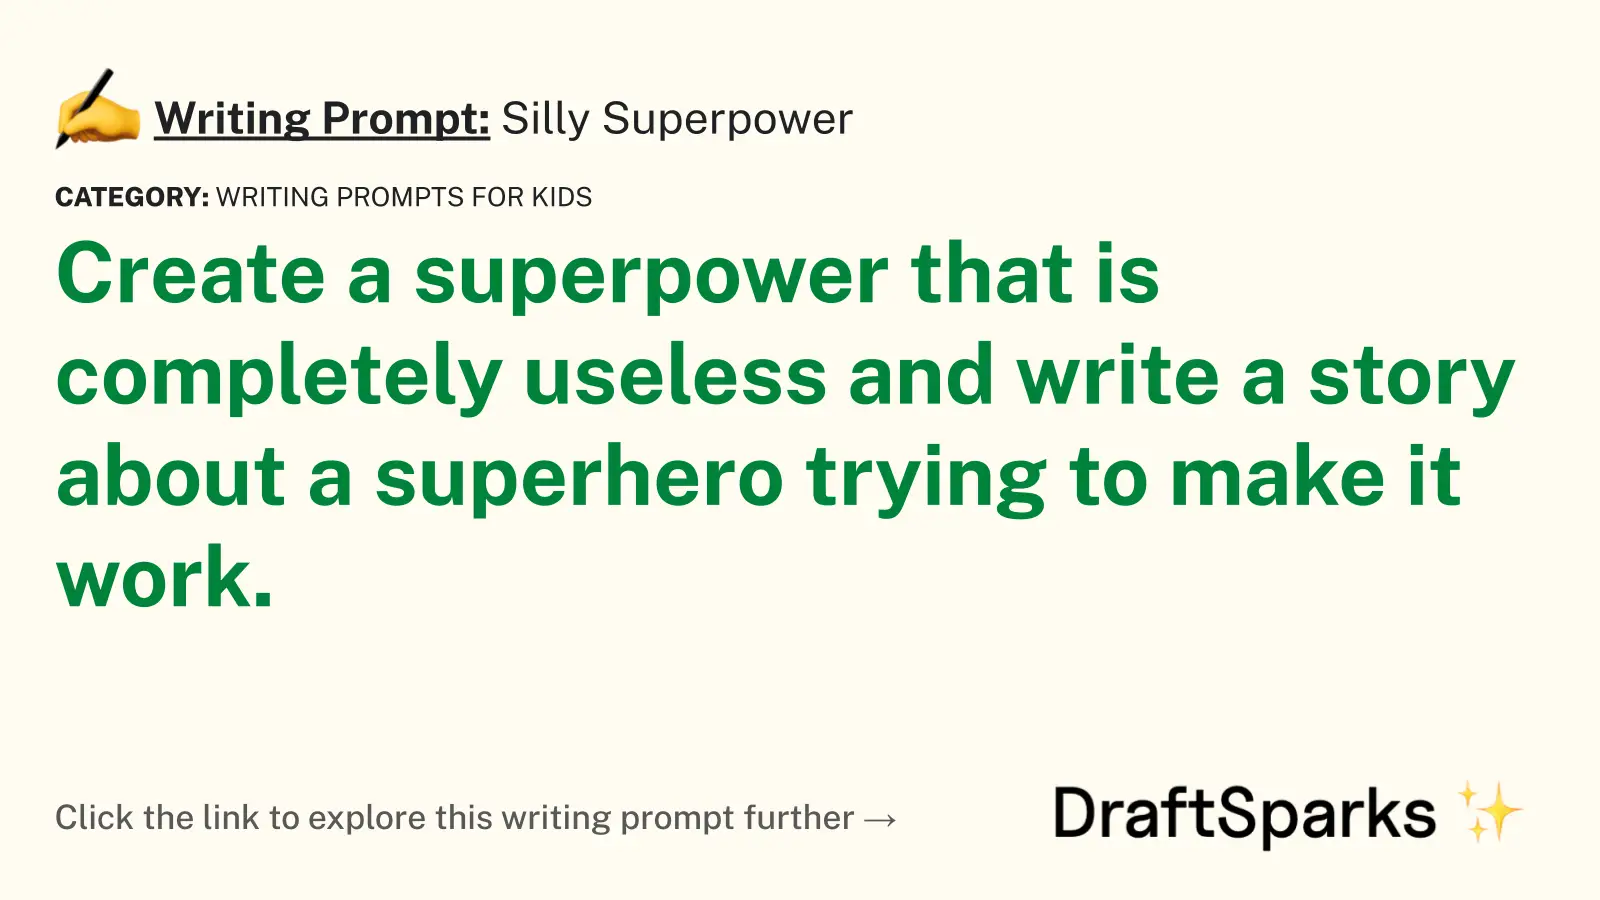 Silly Superpower